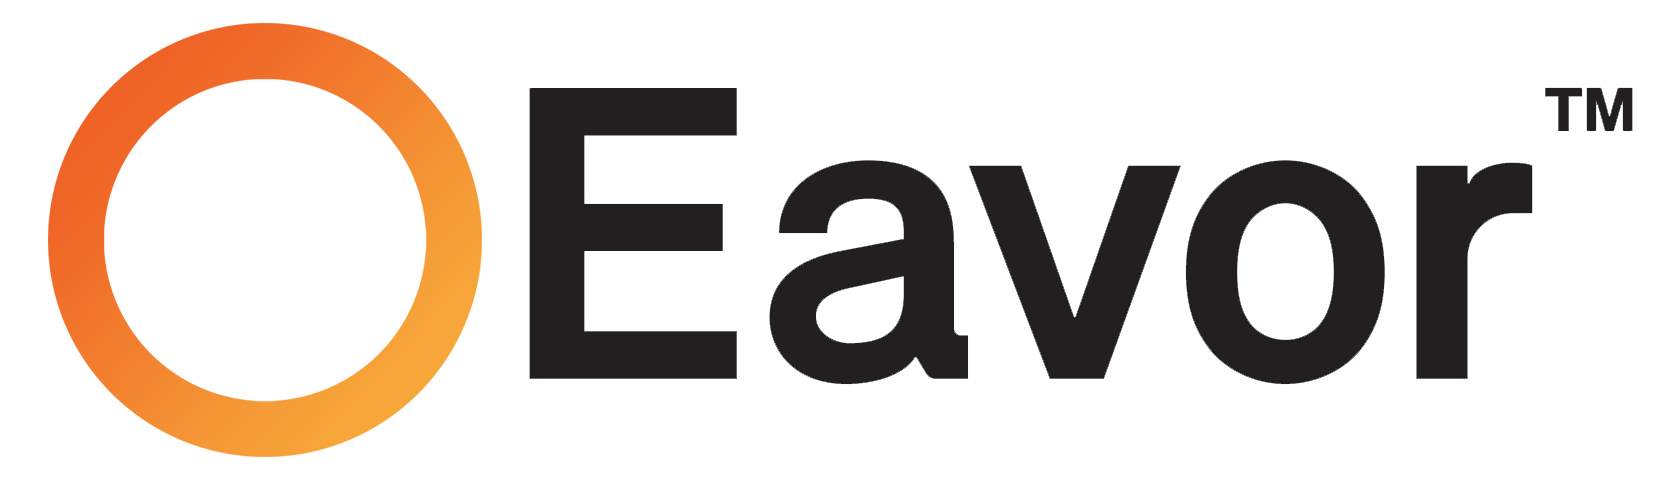 Eavor-logo-New-Black